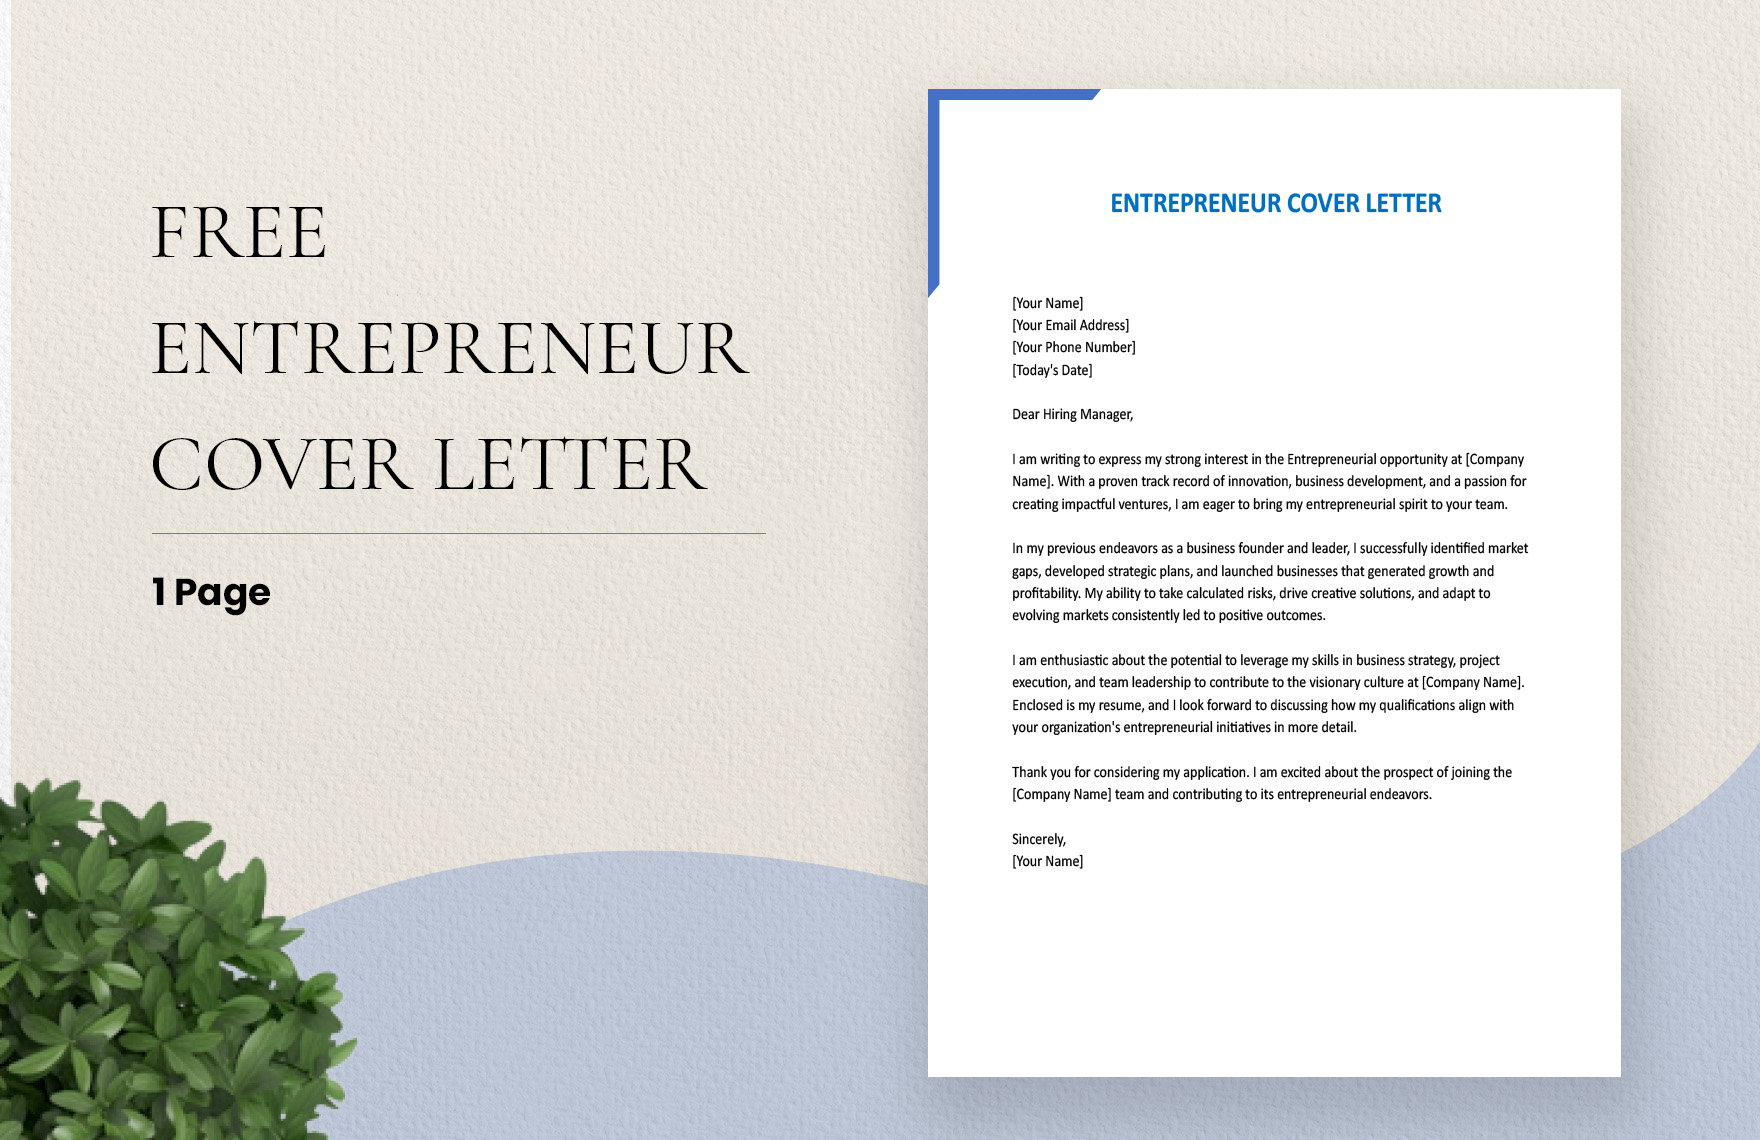 Entrepreneur Cover Letter in Word, Google Docs